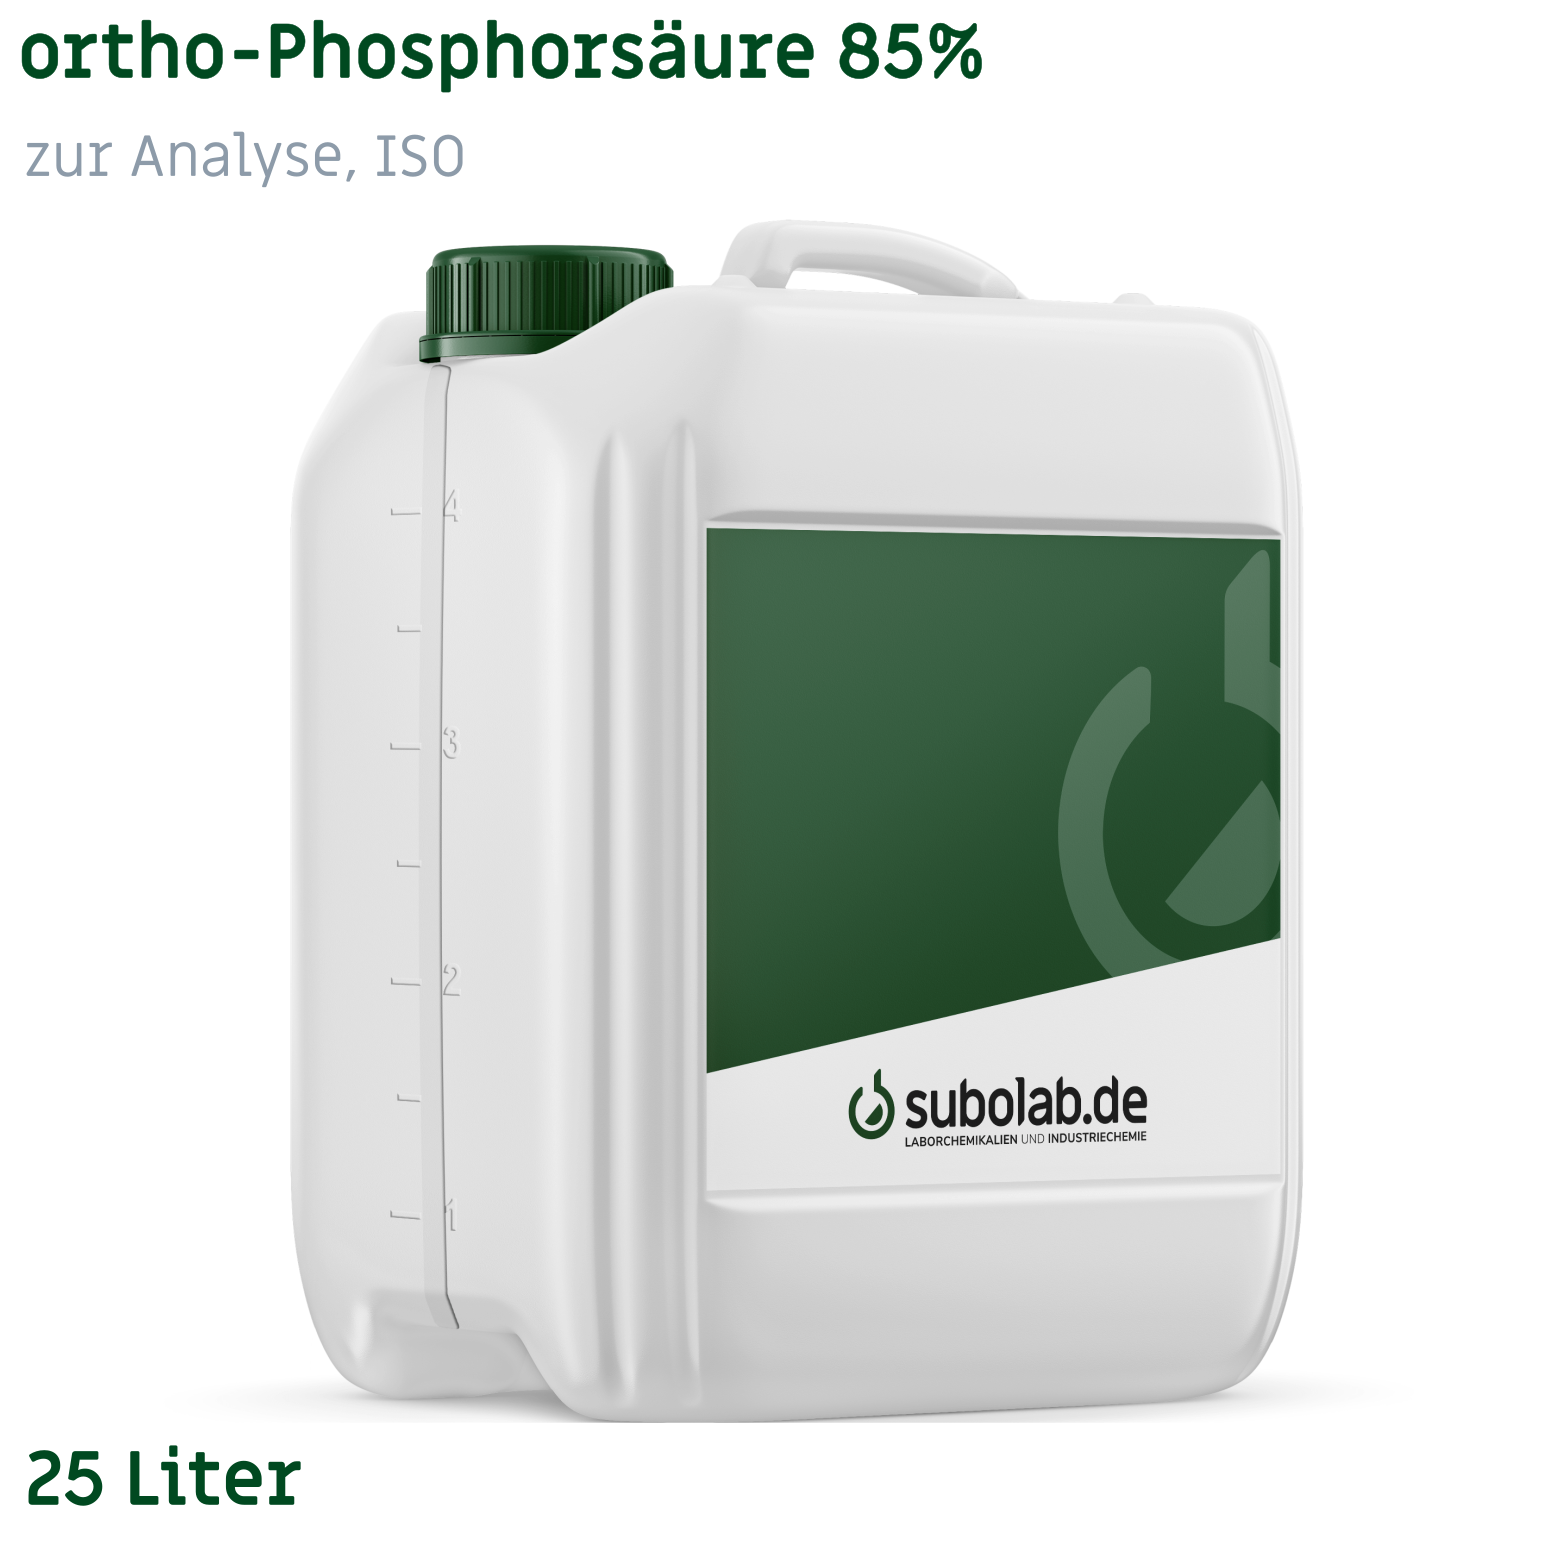 Bild von ortho-Phosphorsäure 85% zur Analyse, ISO (25 Liter)